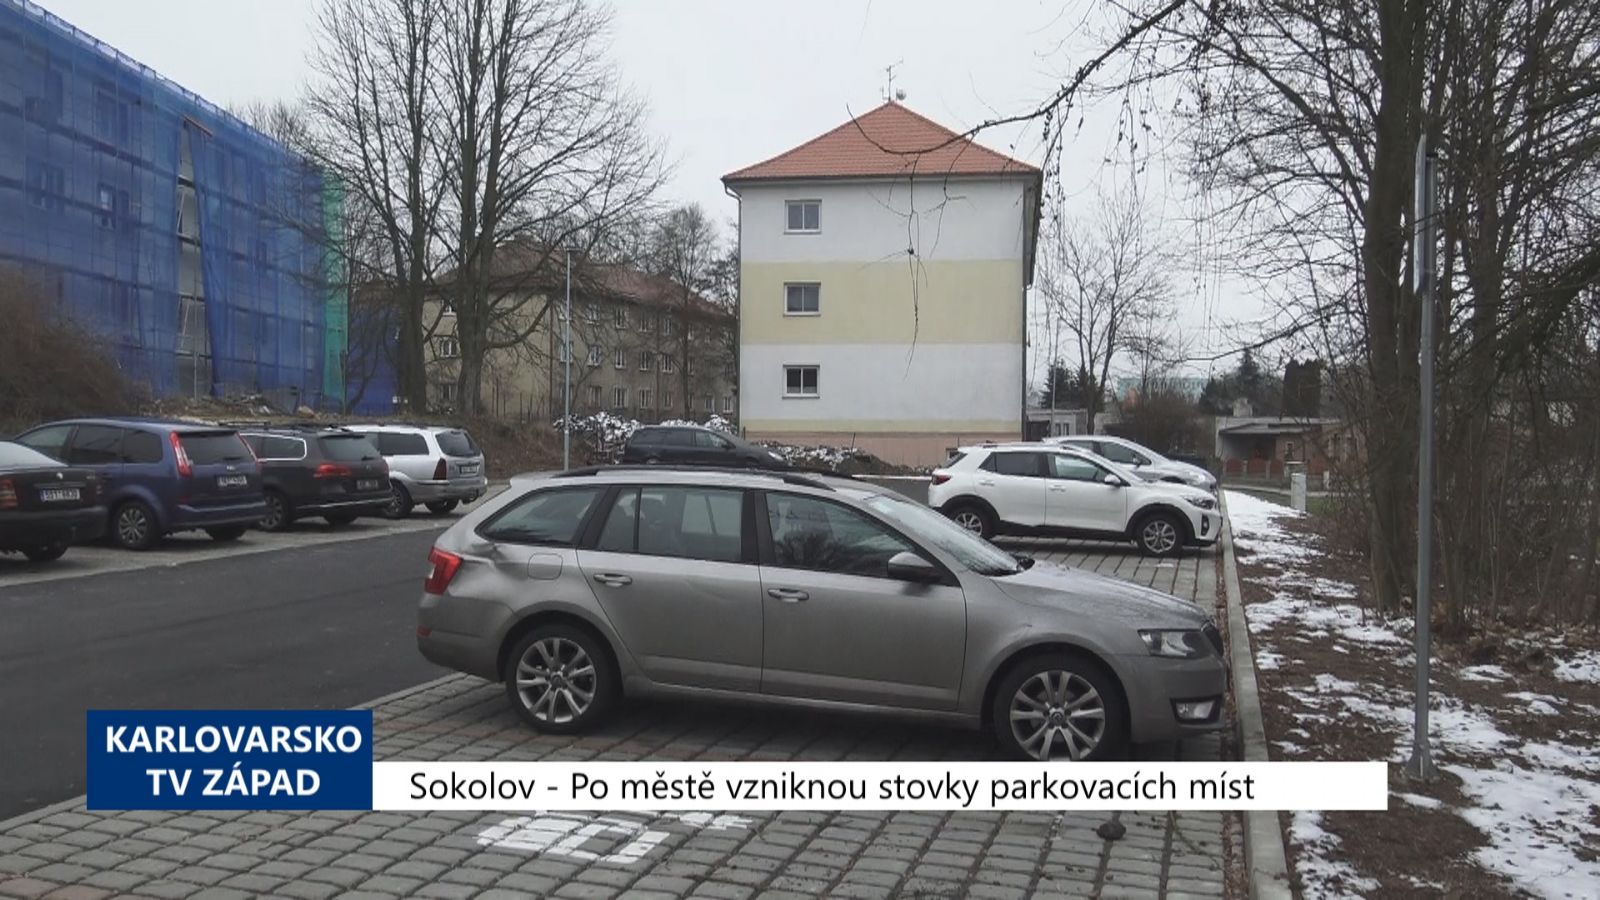 Sokolov: Po městě vzniknou stovky parkovacích míst (TV Západ)